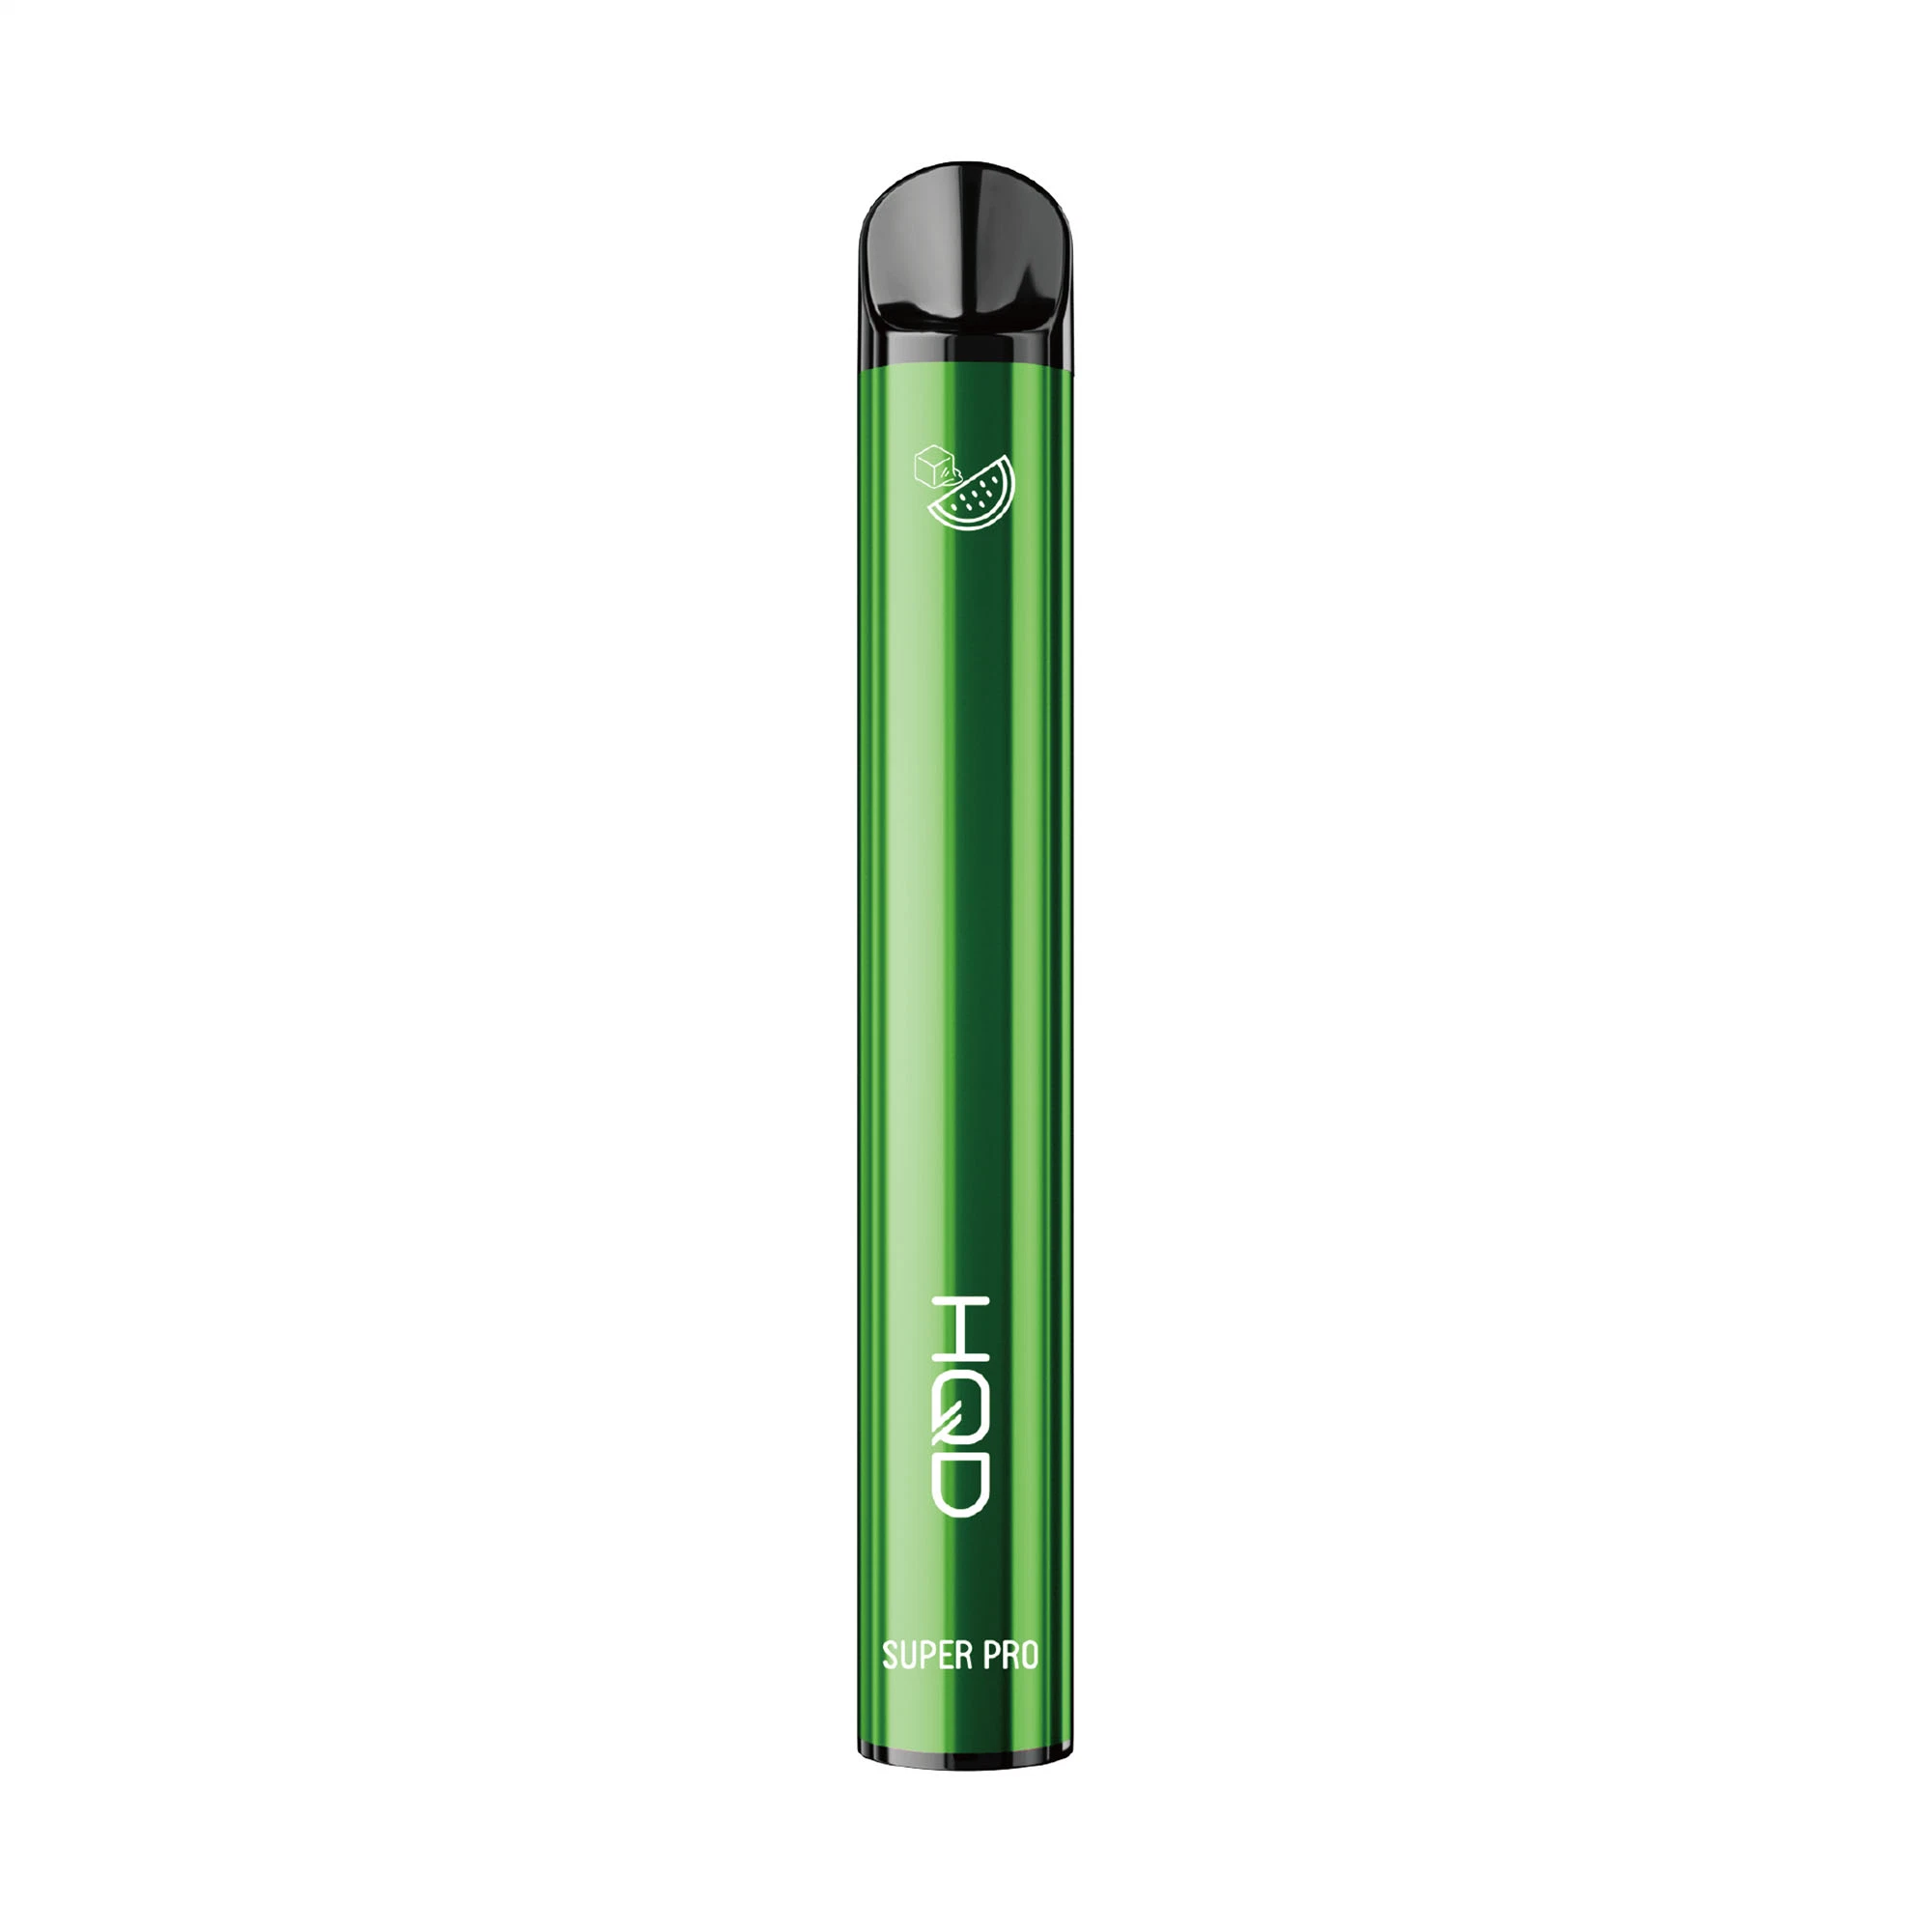 Hqd Tpd Super PRO 600 Puffs Without MOQ Disposable Vape Pen Wholesale Disposable Vape Electronic Vape Vaporizer Atomizer